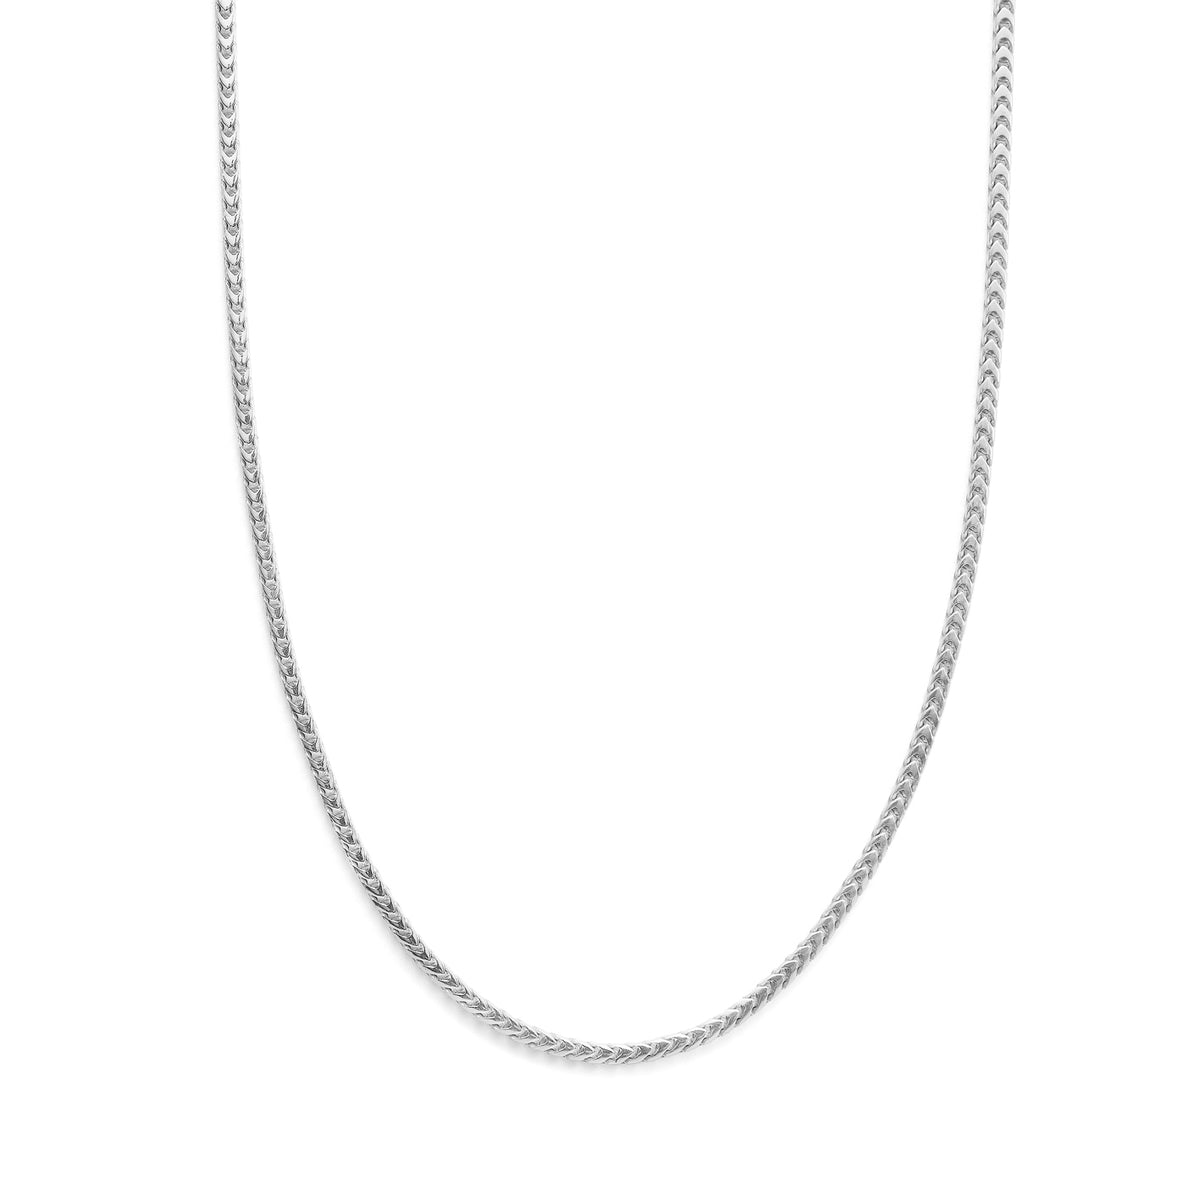 Emanuele Bicocchi Square Chain Necklace - Silver